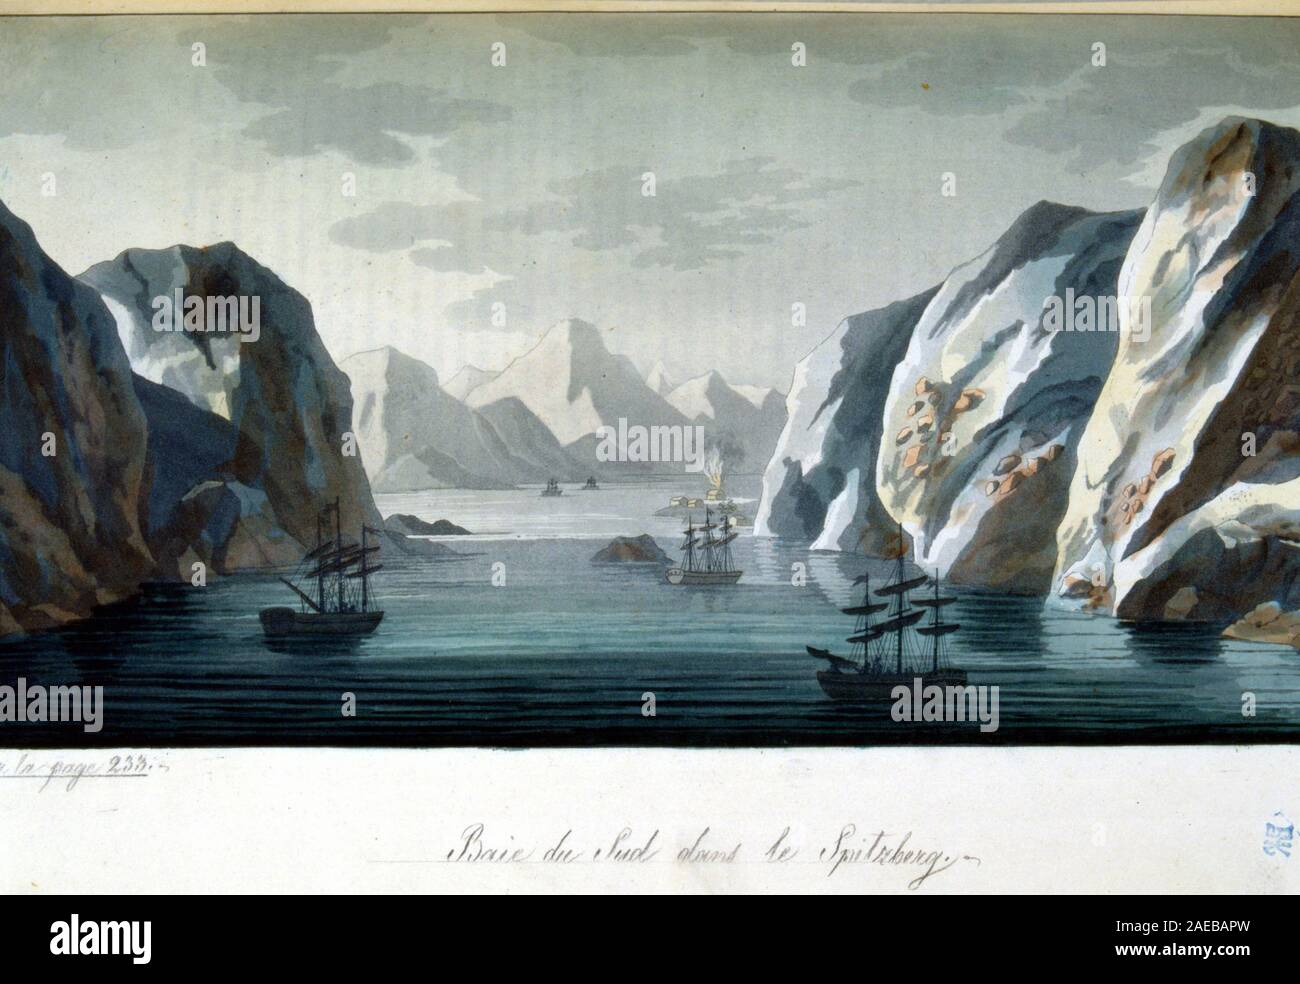 Baie du sud dans le Spitzberg, Norvge - in 'Le costume ancien et moderne' par Jules Ferrario, ed. Milan, 1819-1820 Stock Photo